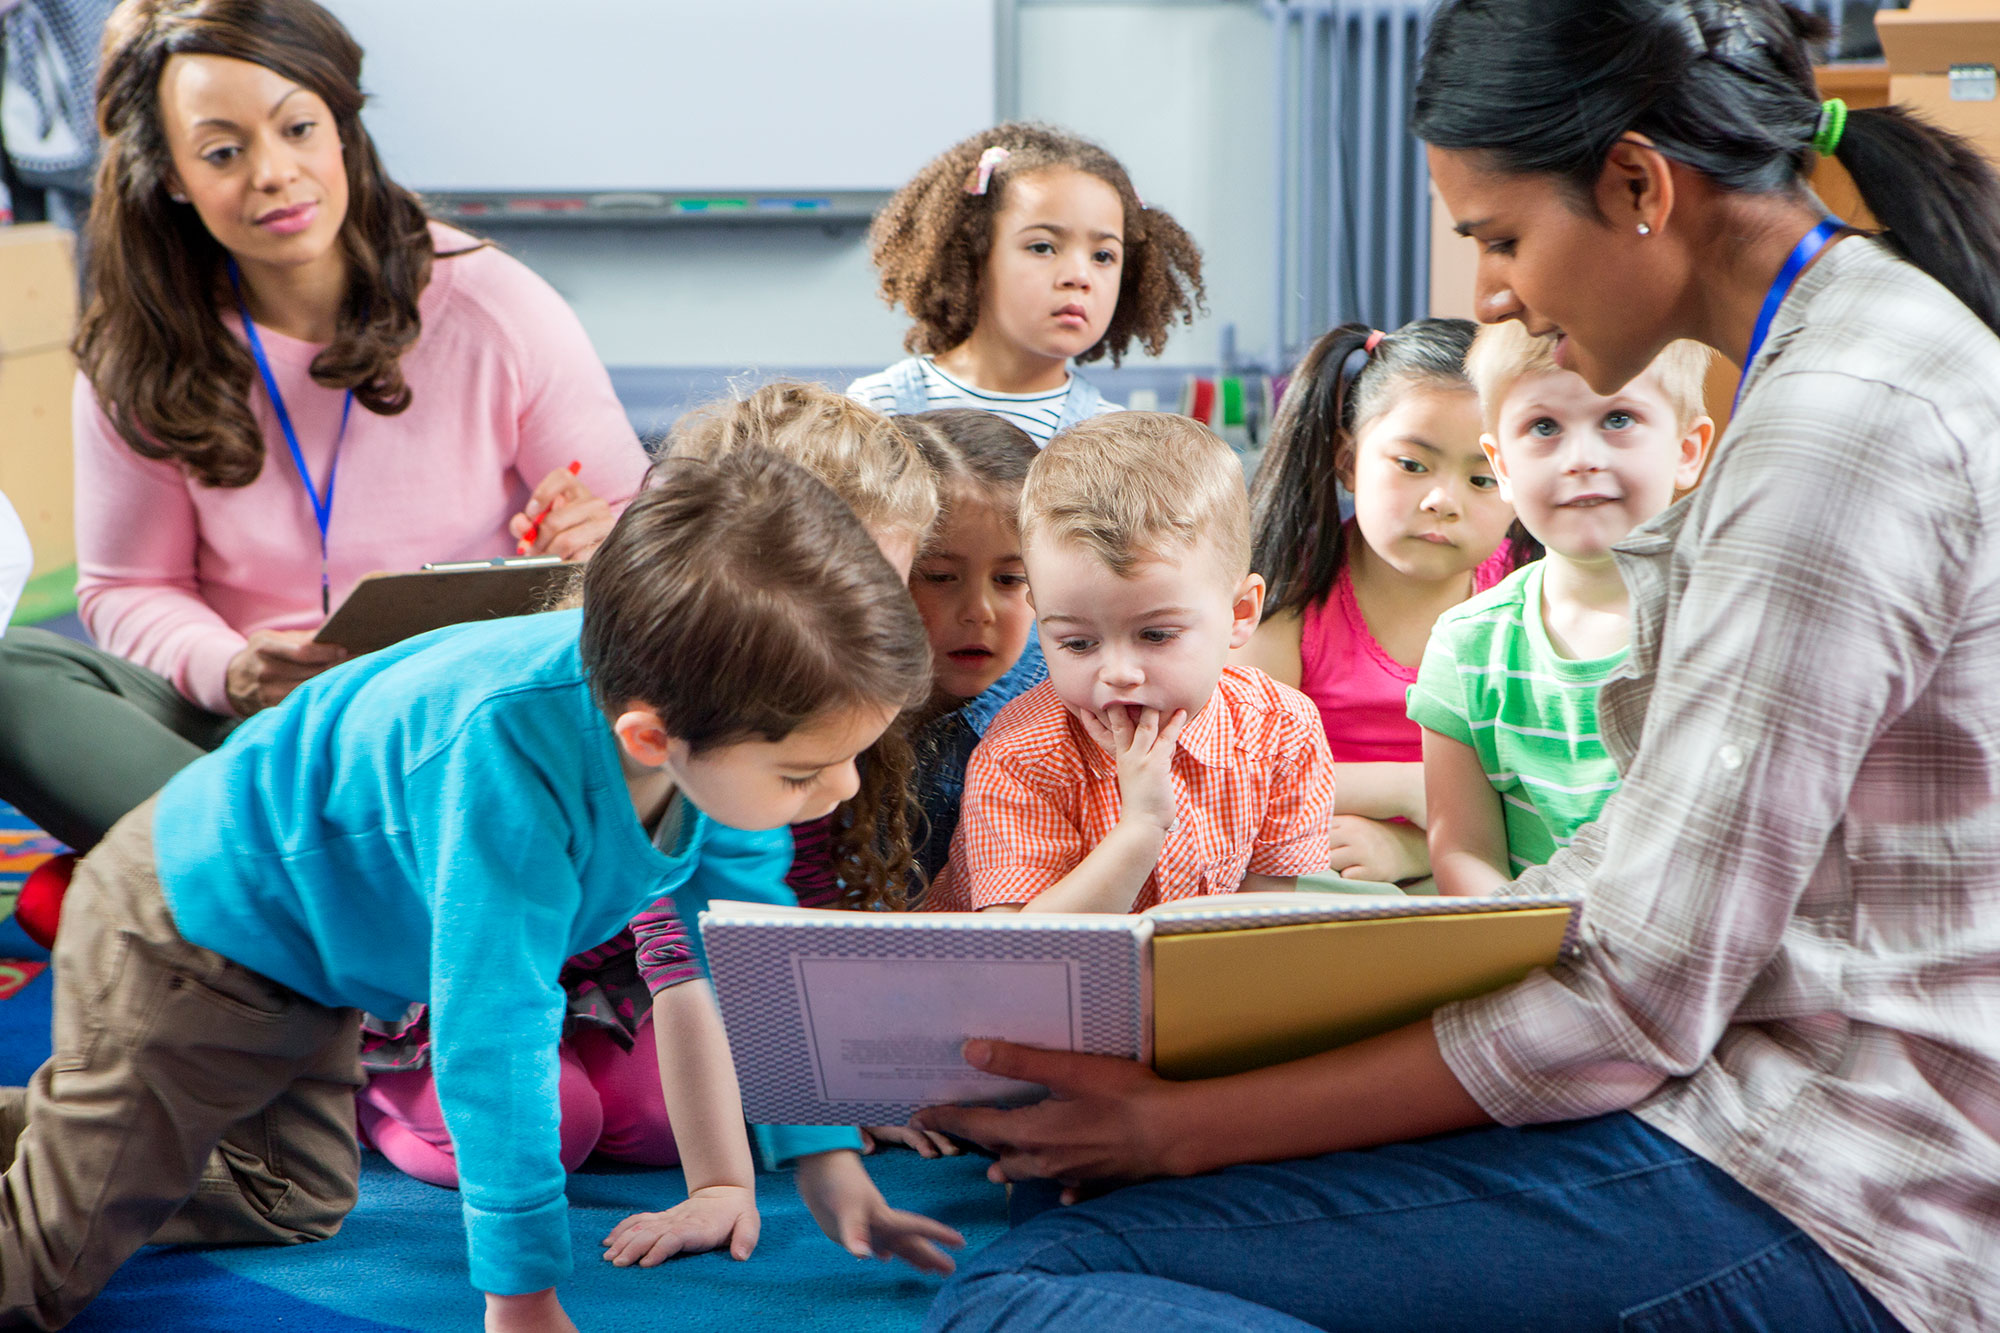 A teacher coach observes a teacher reading to a classroom of children.